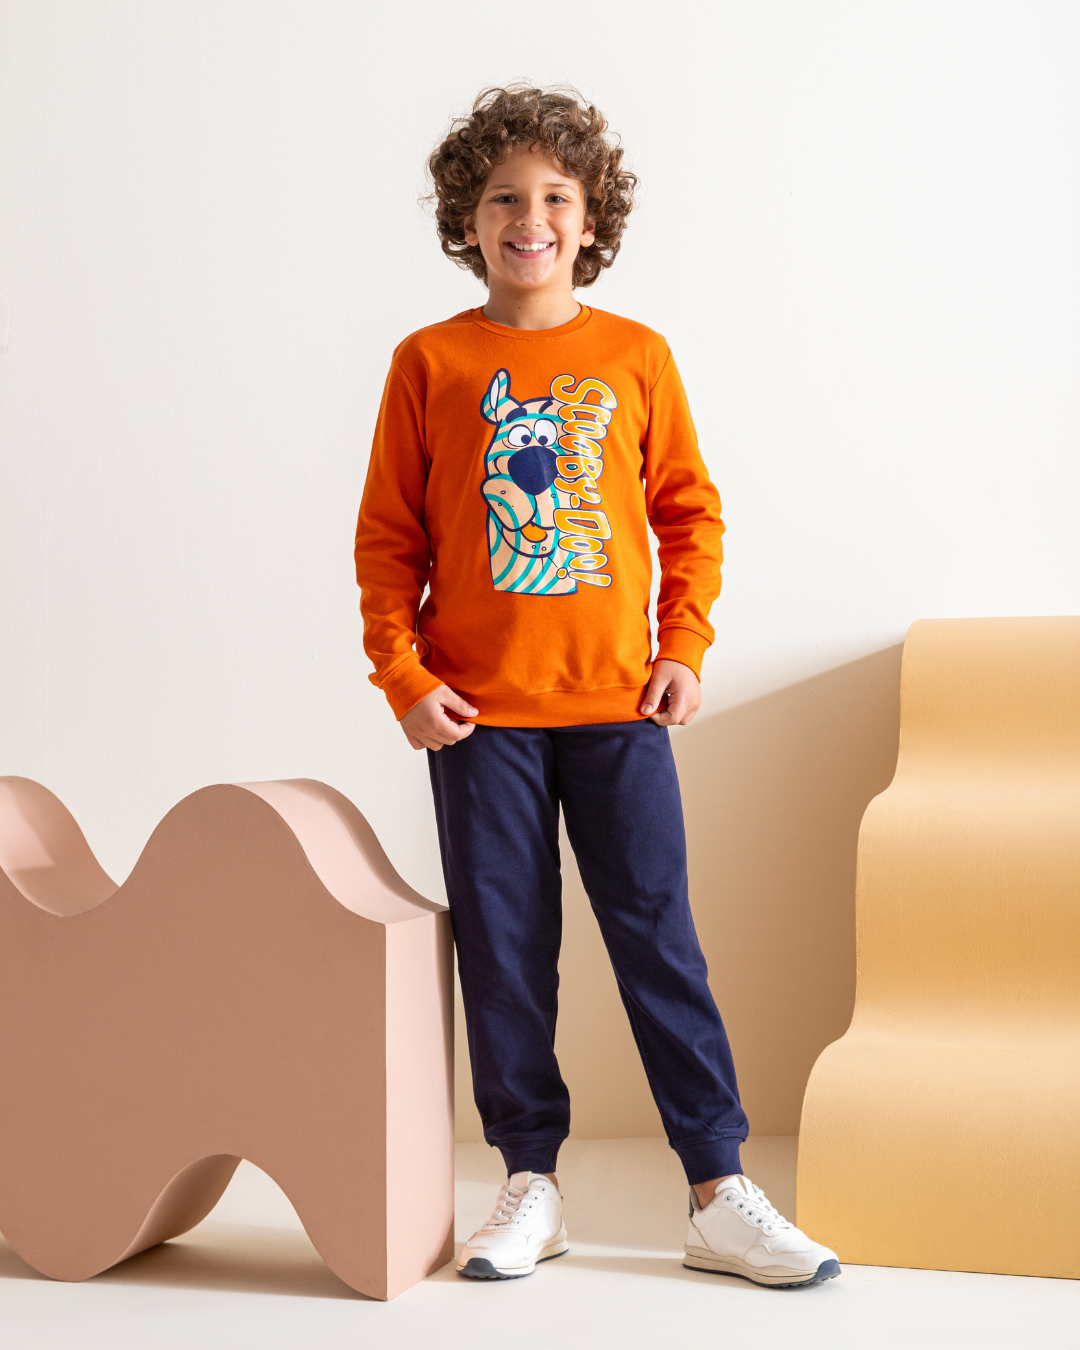 Scooby Doo boys pajamas set with interlock print